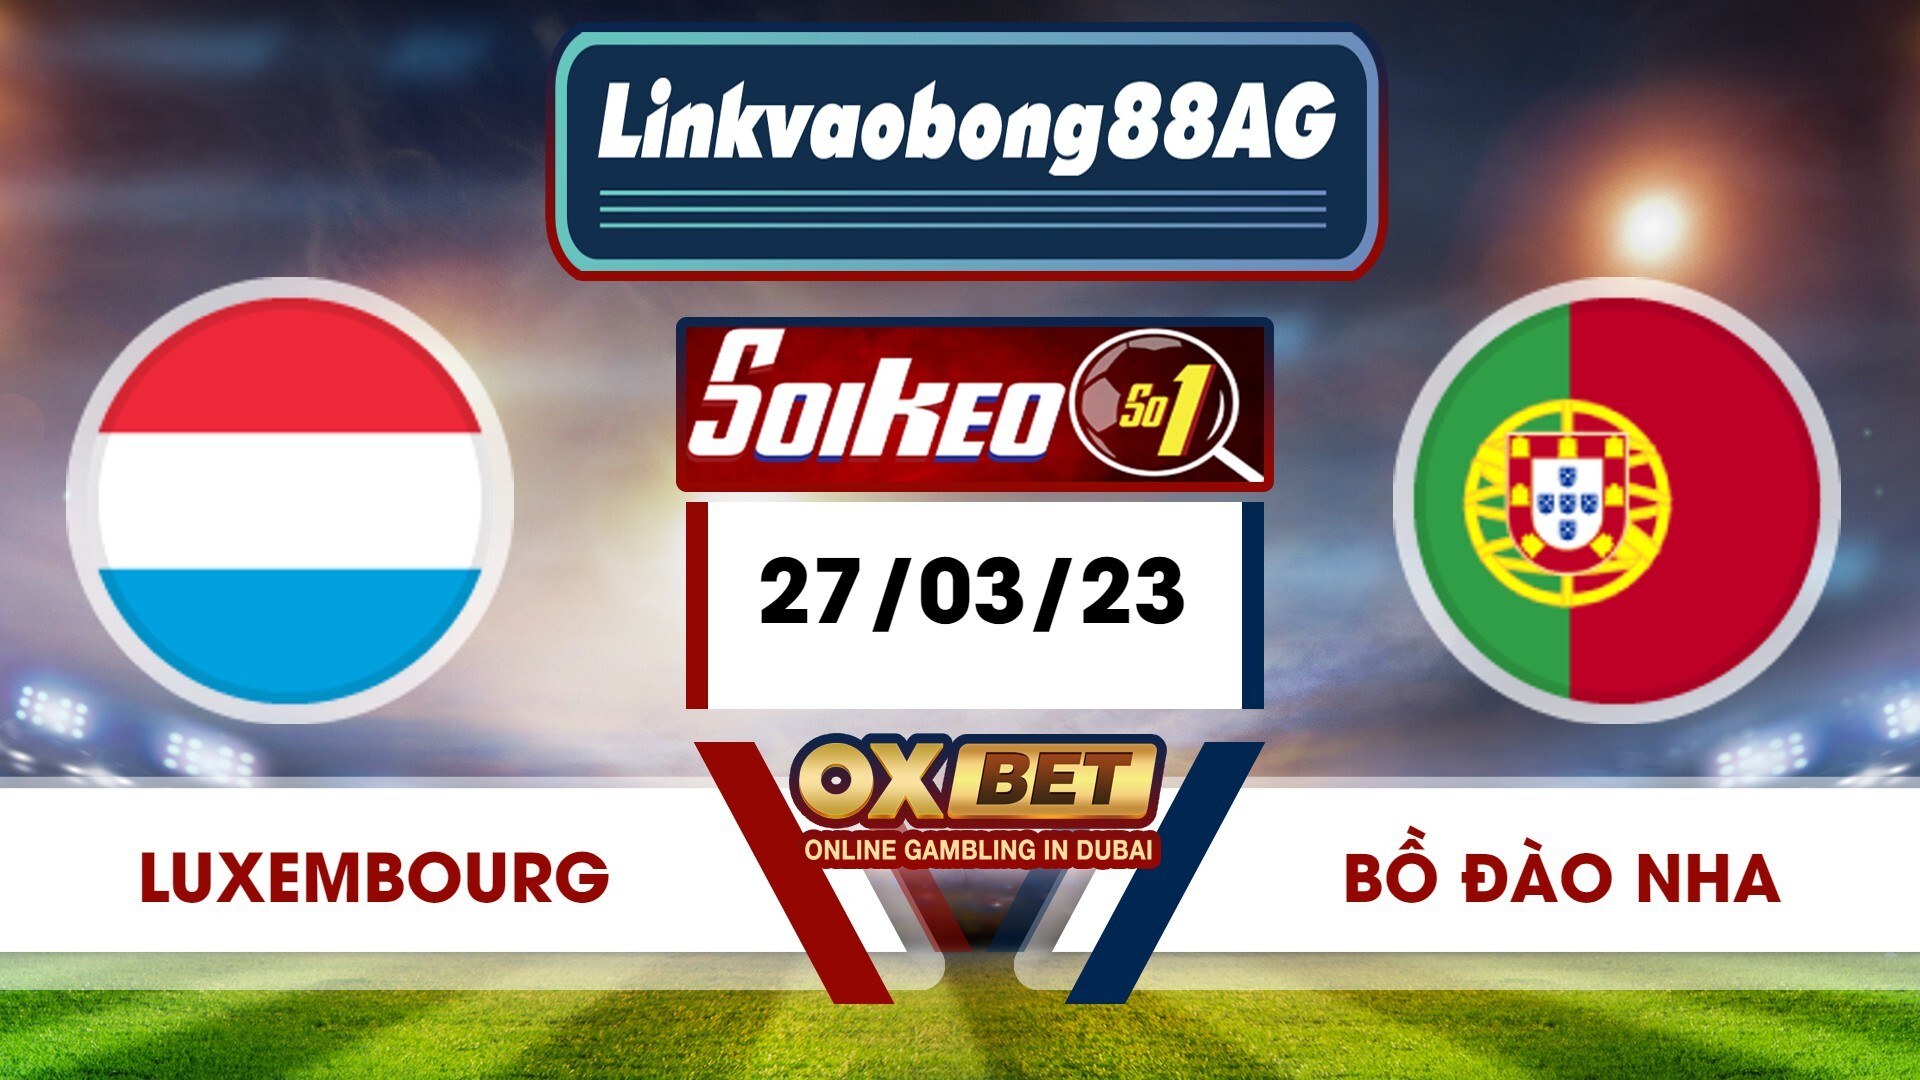 Soi kèo Bong88 Luxembourg vs Bồ Đào Nha – 27/03/2023 – 01h45 sáng